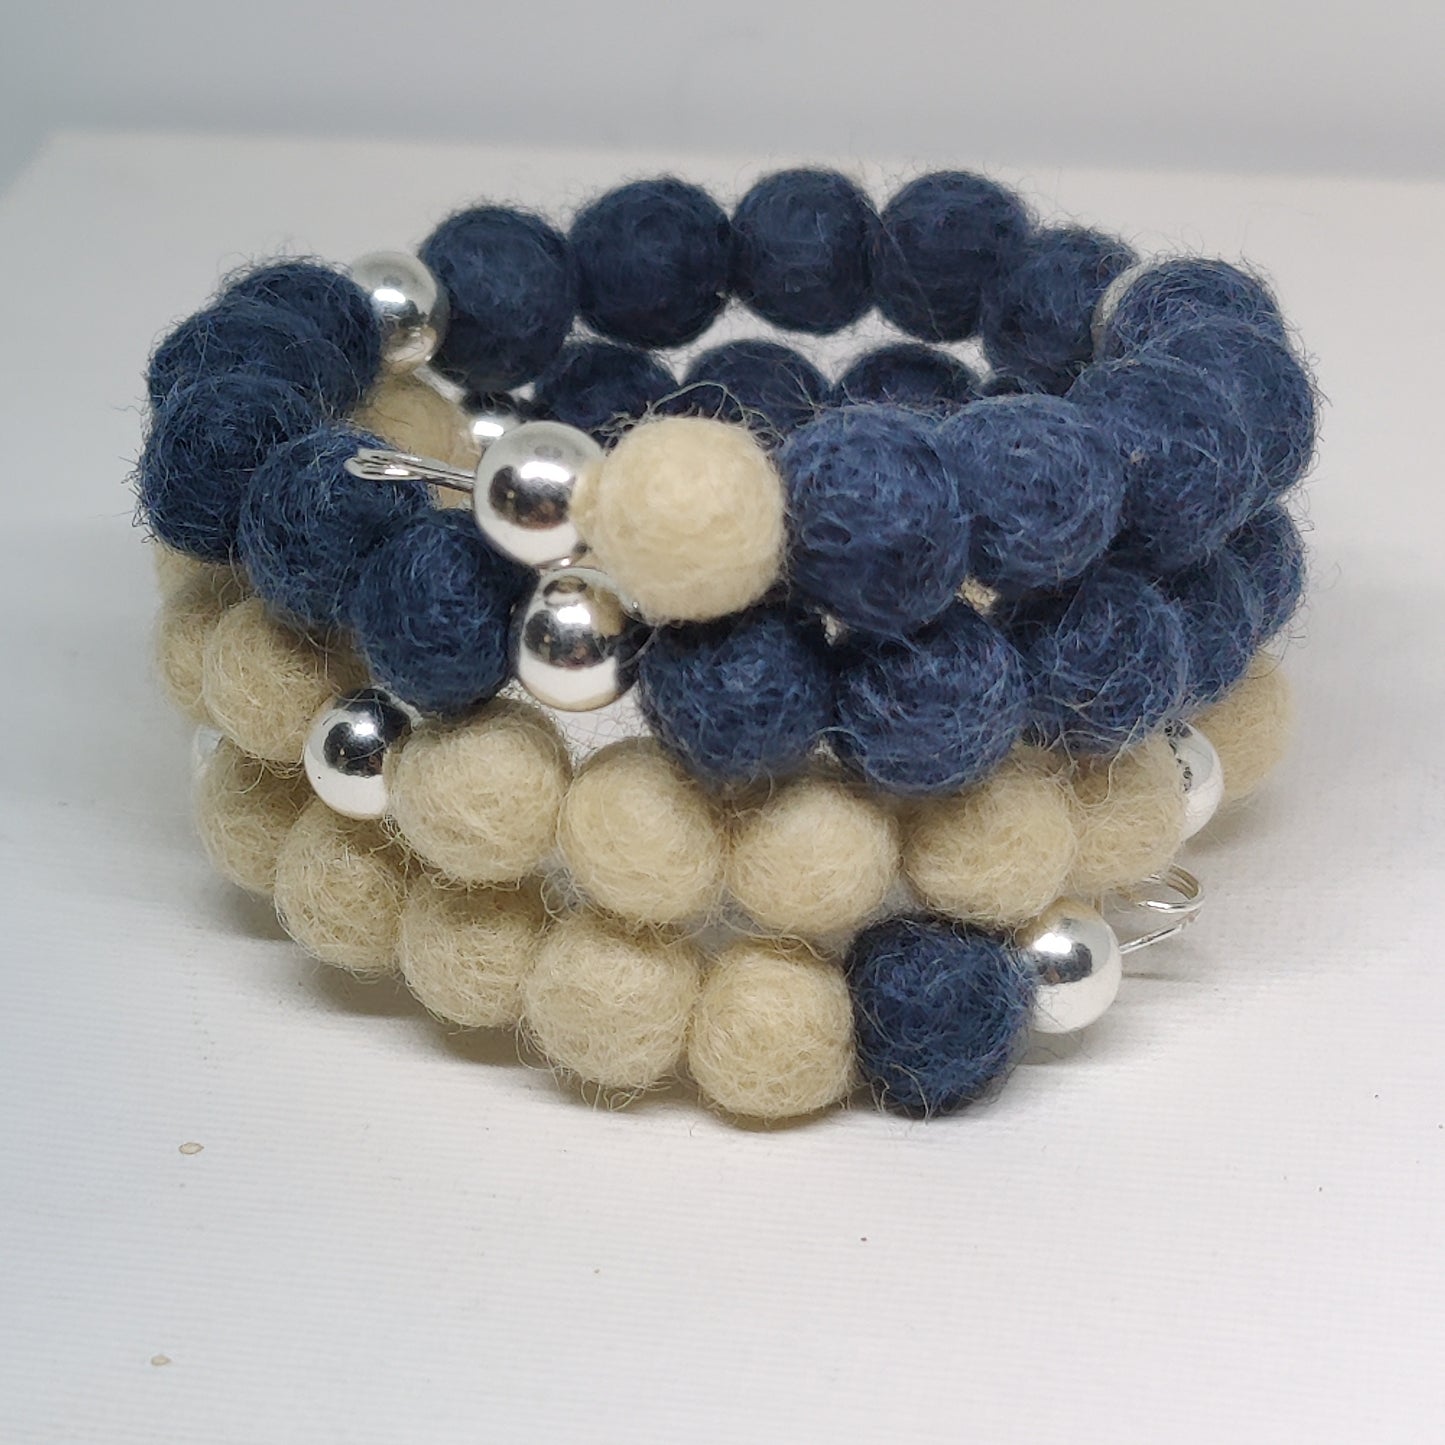 Woollen Caviar Wrapped Bracelets